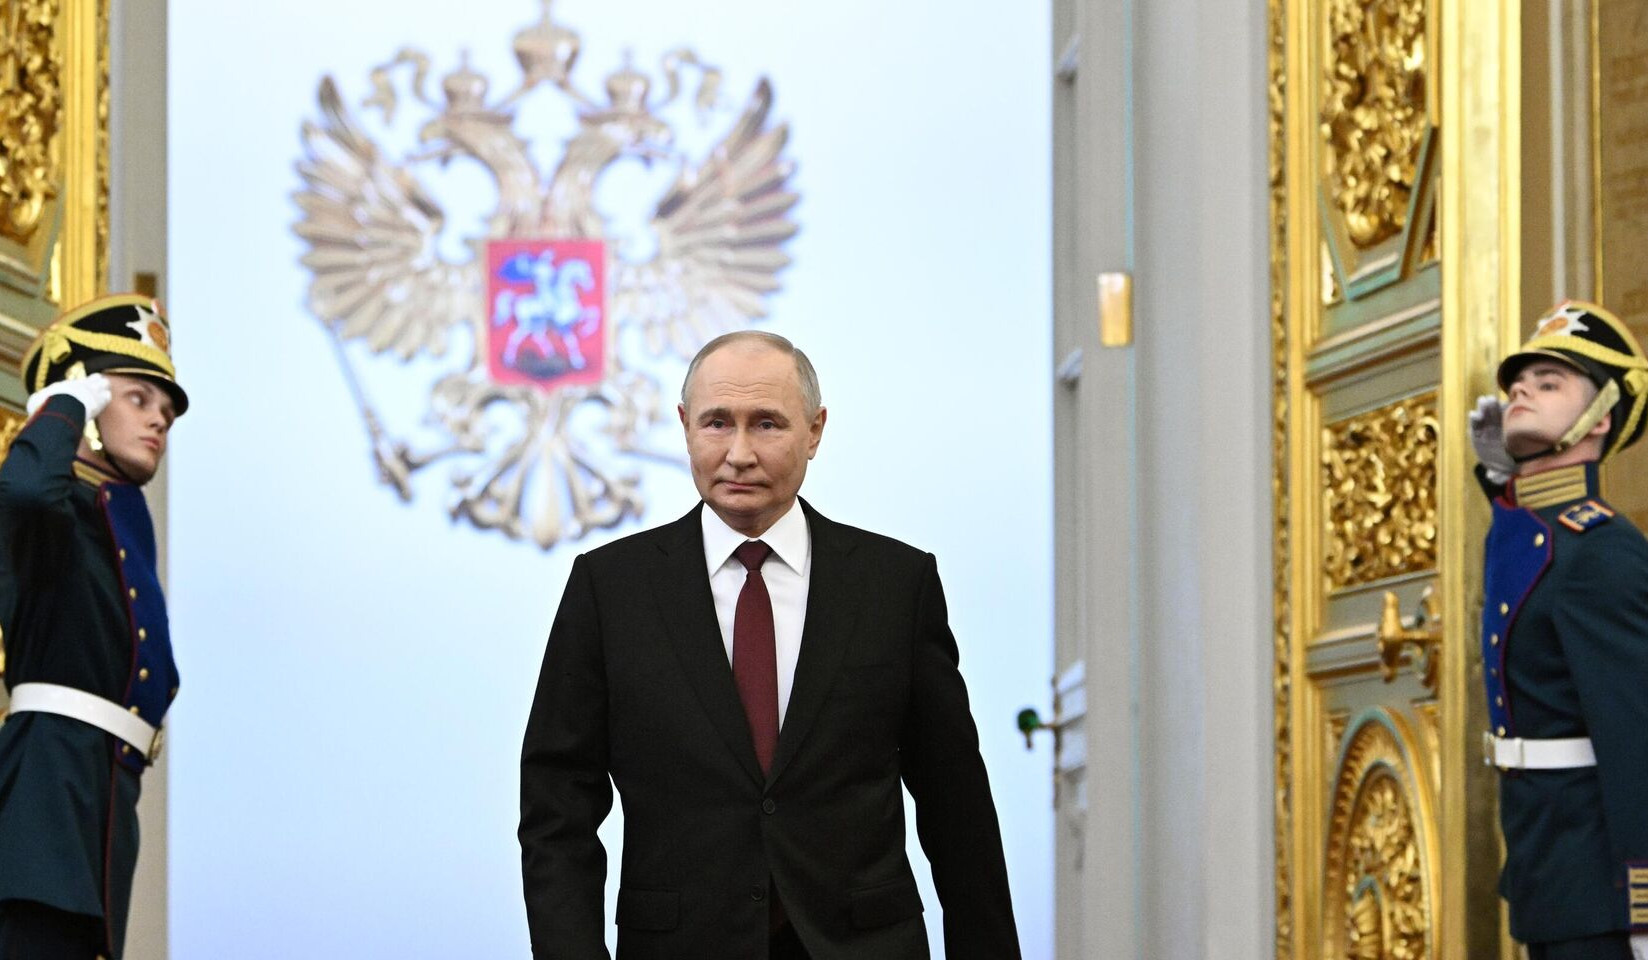 Путин в пятый раз вступил в должность президента России